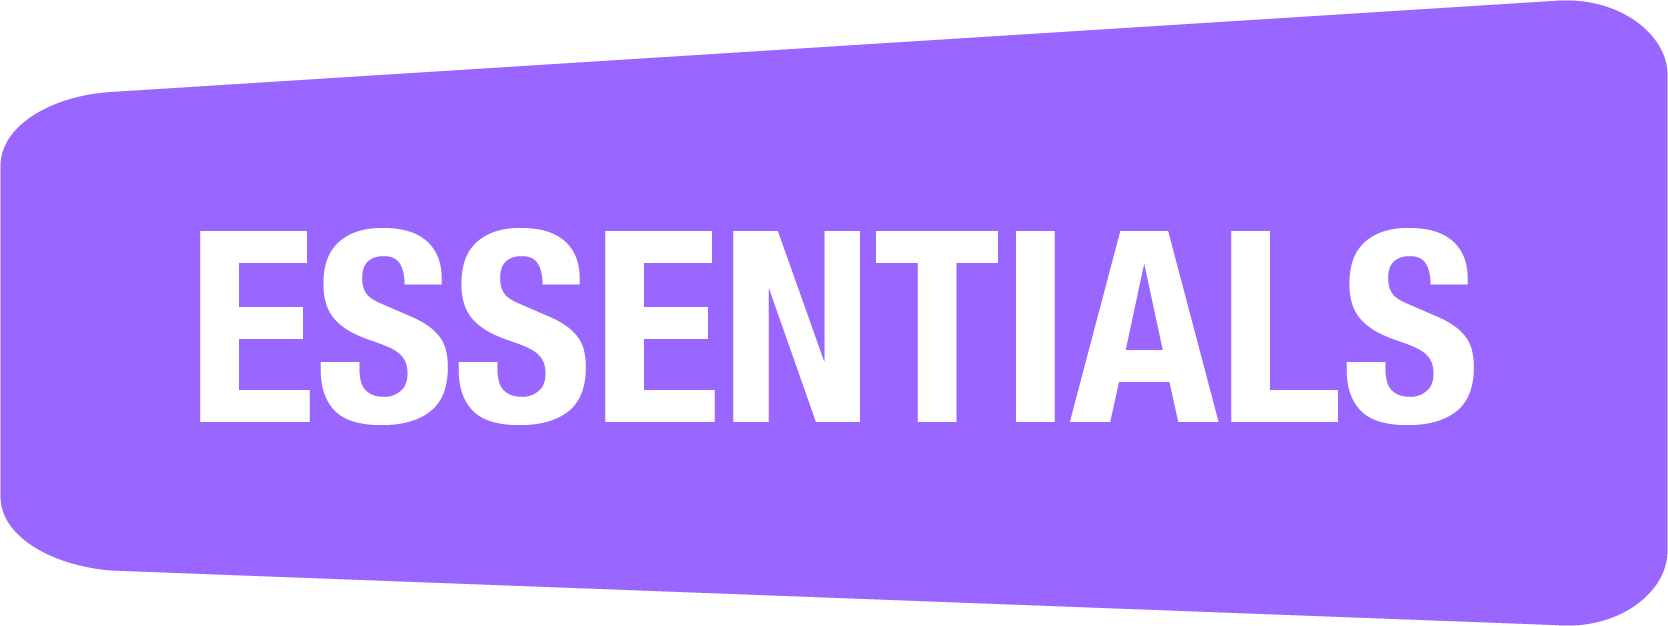 CyberPass Essentials logo